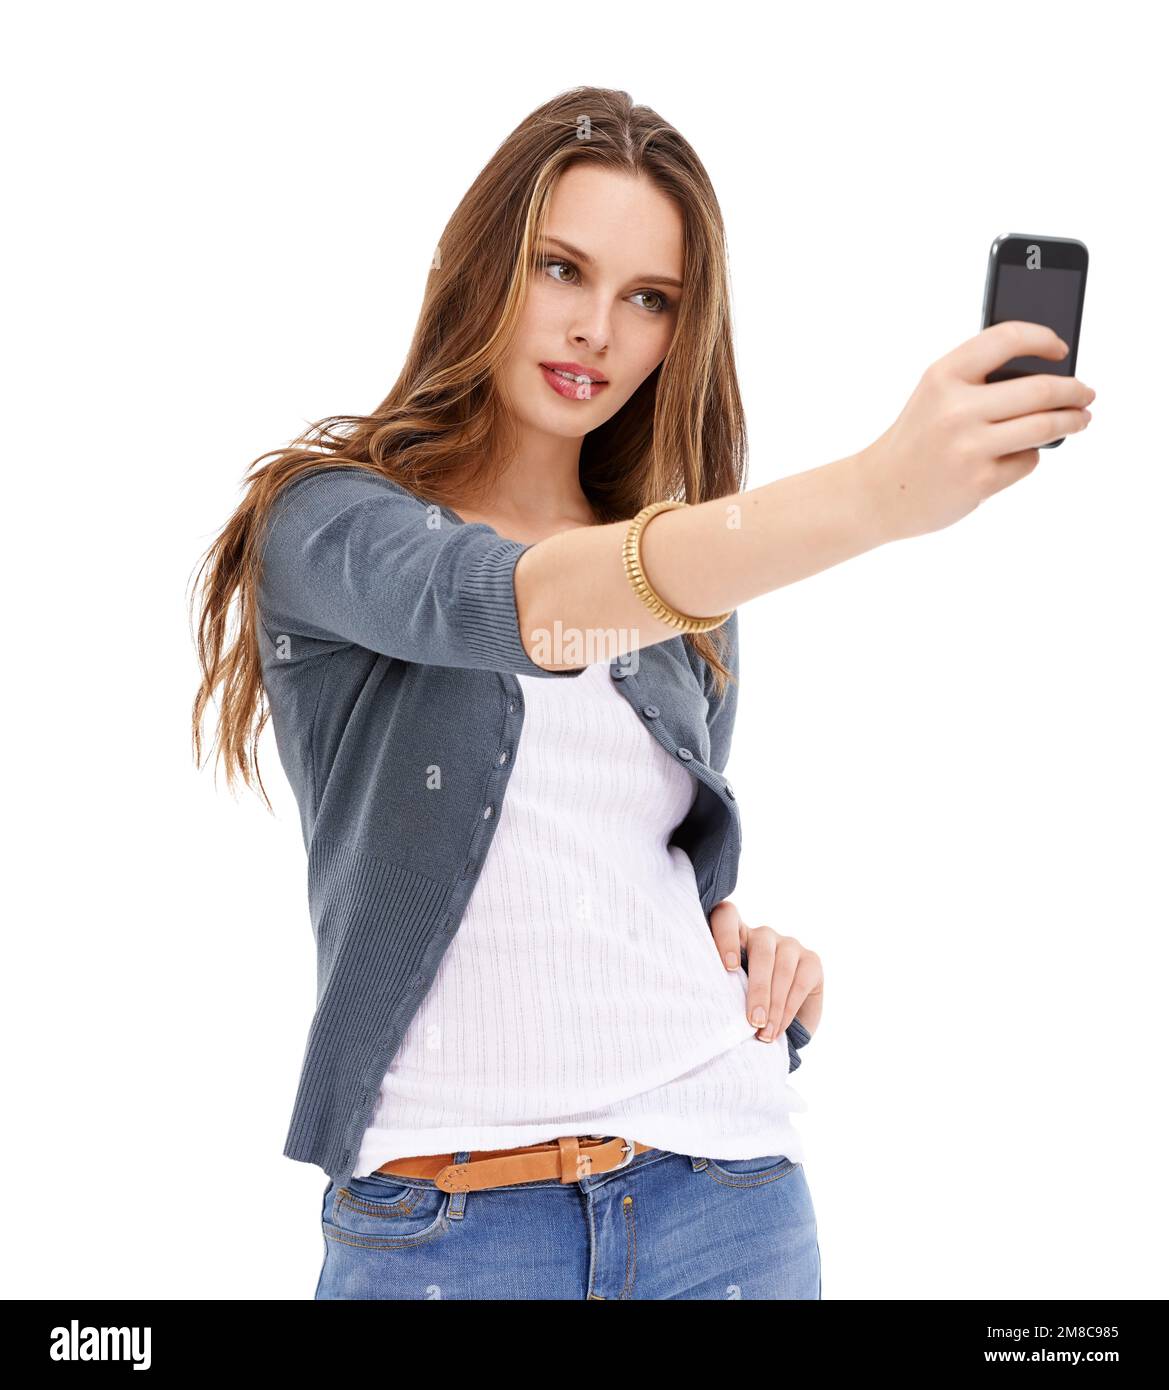 Smartphone digitale, selfie da studio e donna con immagine in memoria per  cellulare per app di social media, siti Web online o social network. Utente  tecnico mobile Foto stock - Alamy